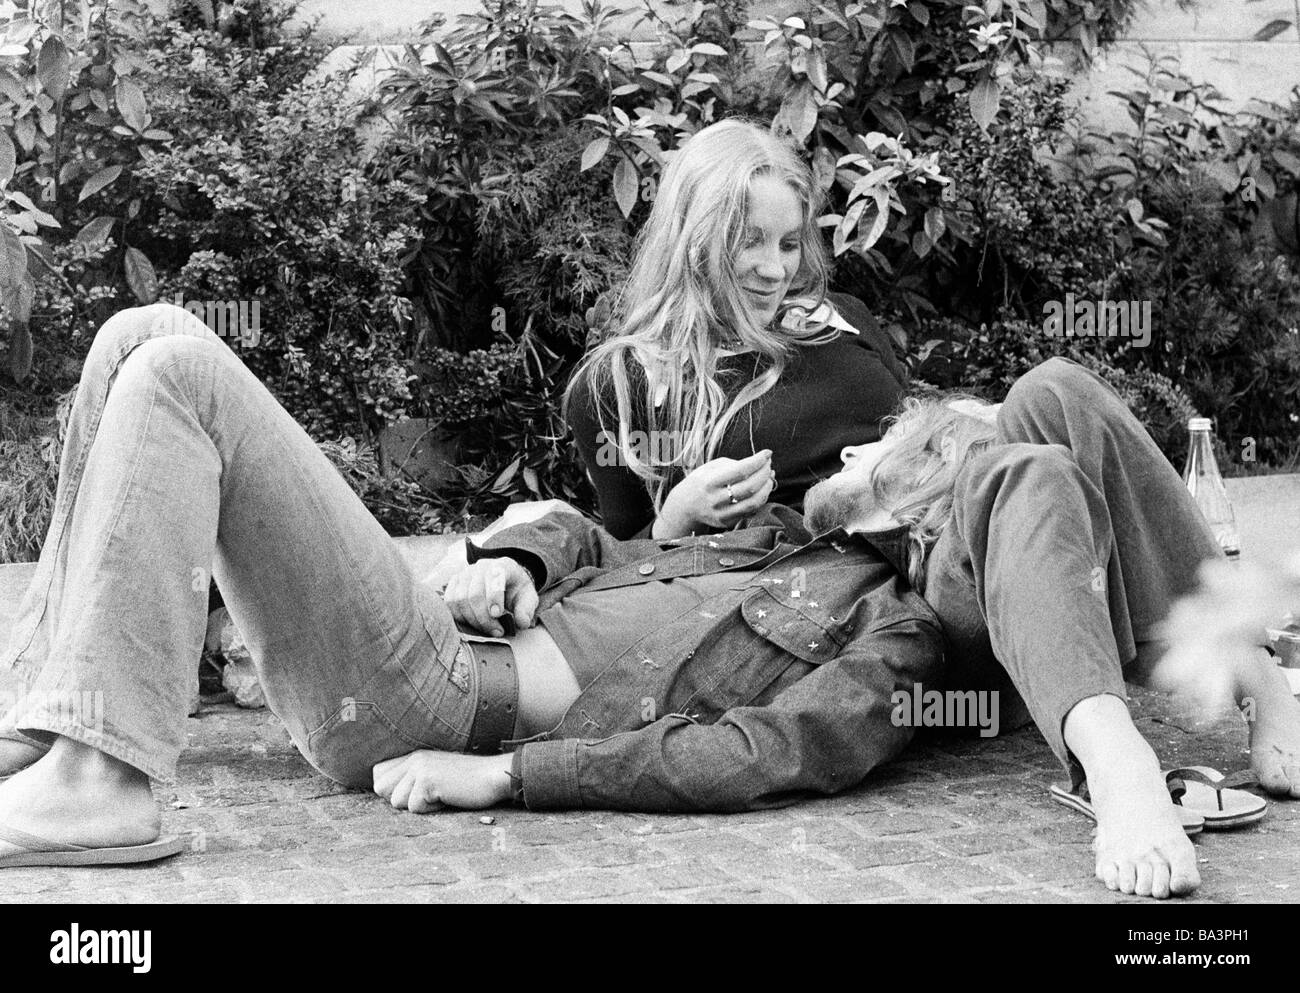 Negli anni settanta, foto in bianco e nero, la gente giovane coppia giace sul terreno, teneramente, di età compresa tra i 18 e i 25 anni, Paesi Bassi, Amsterdam Foto Stock